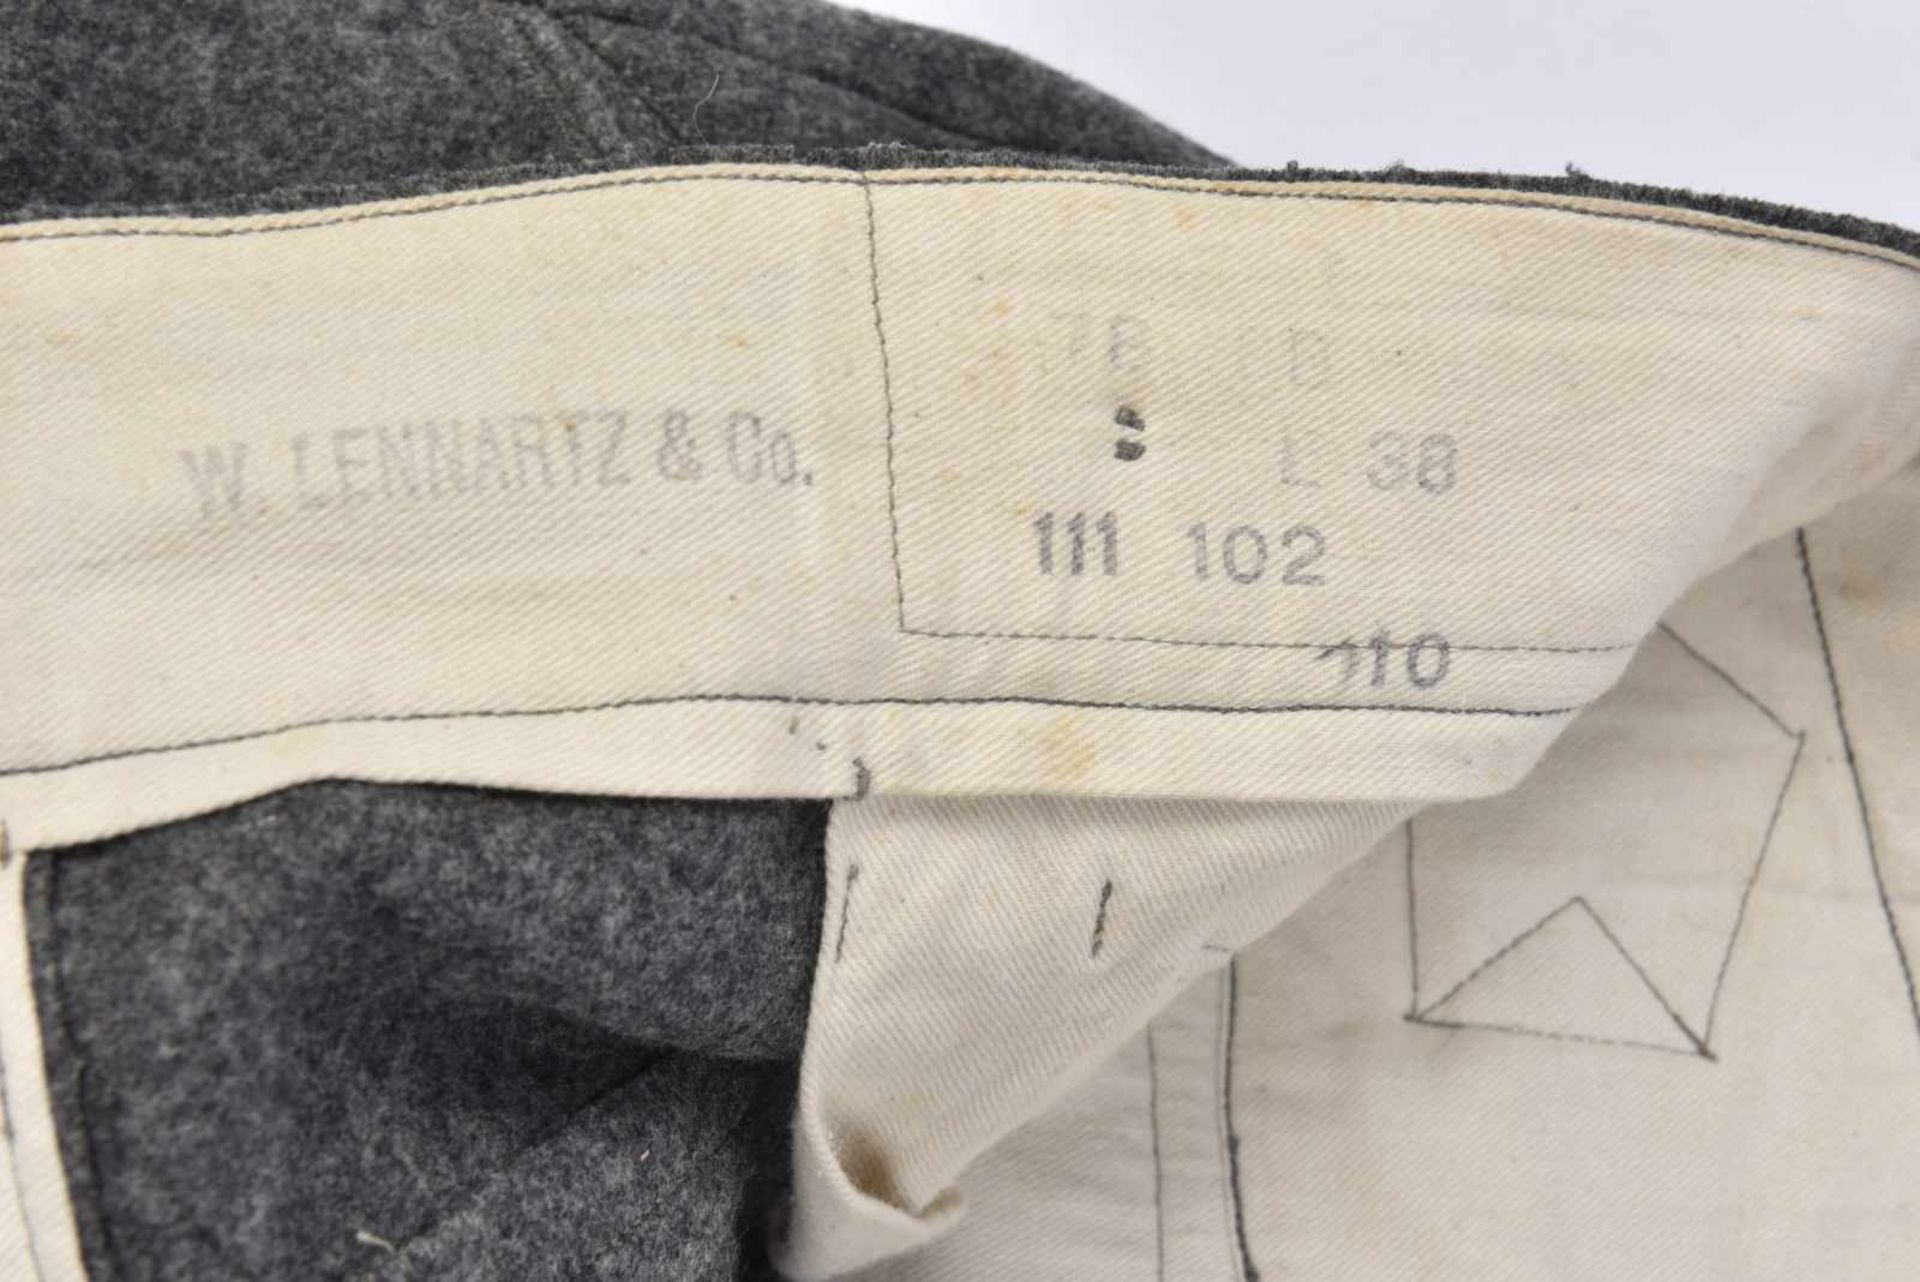 Pantalon gris pierre en drap gris pierre, tous les boutons sont présents. Intérieur en tissu coton - Bild 2 aus 4